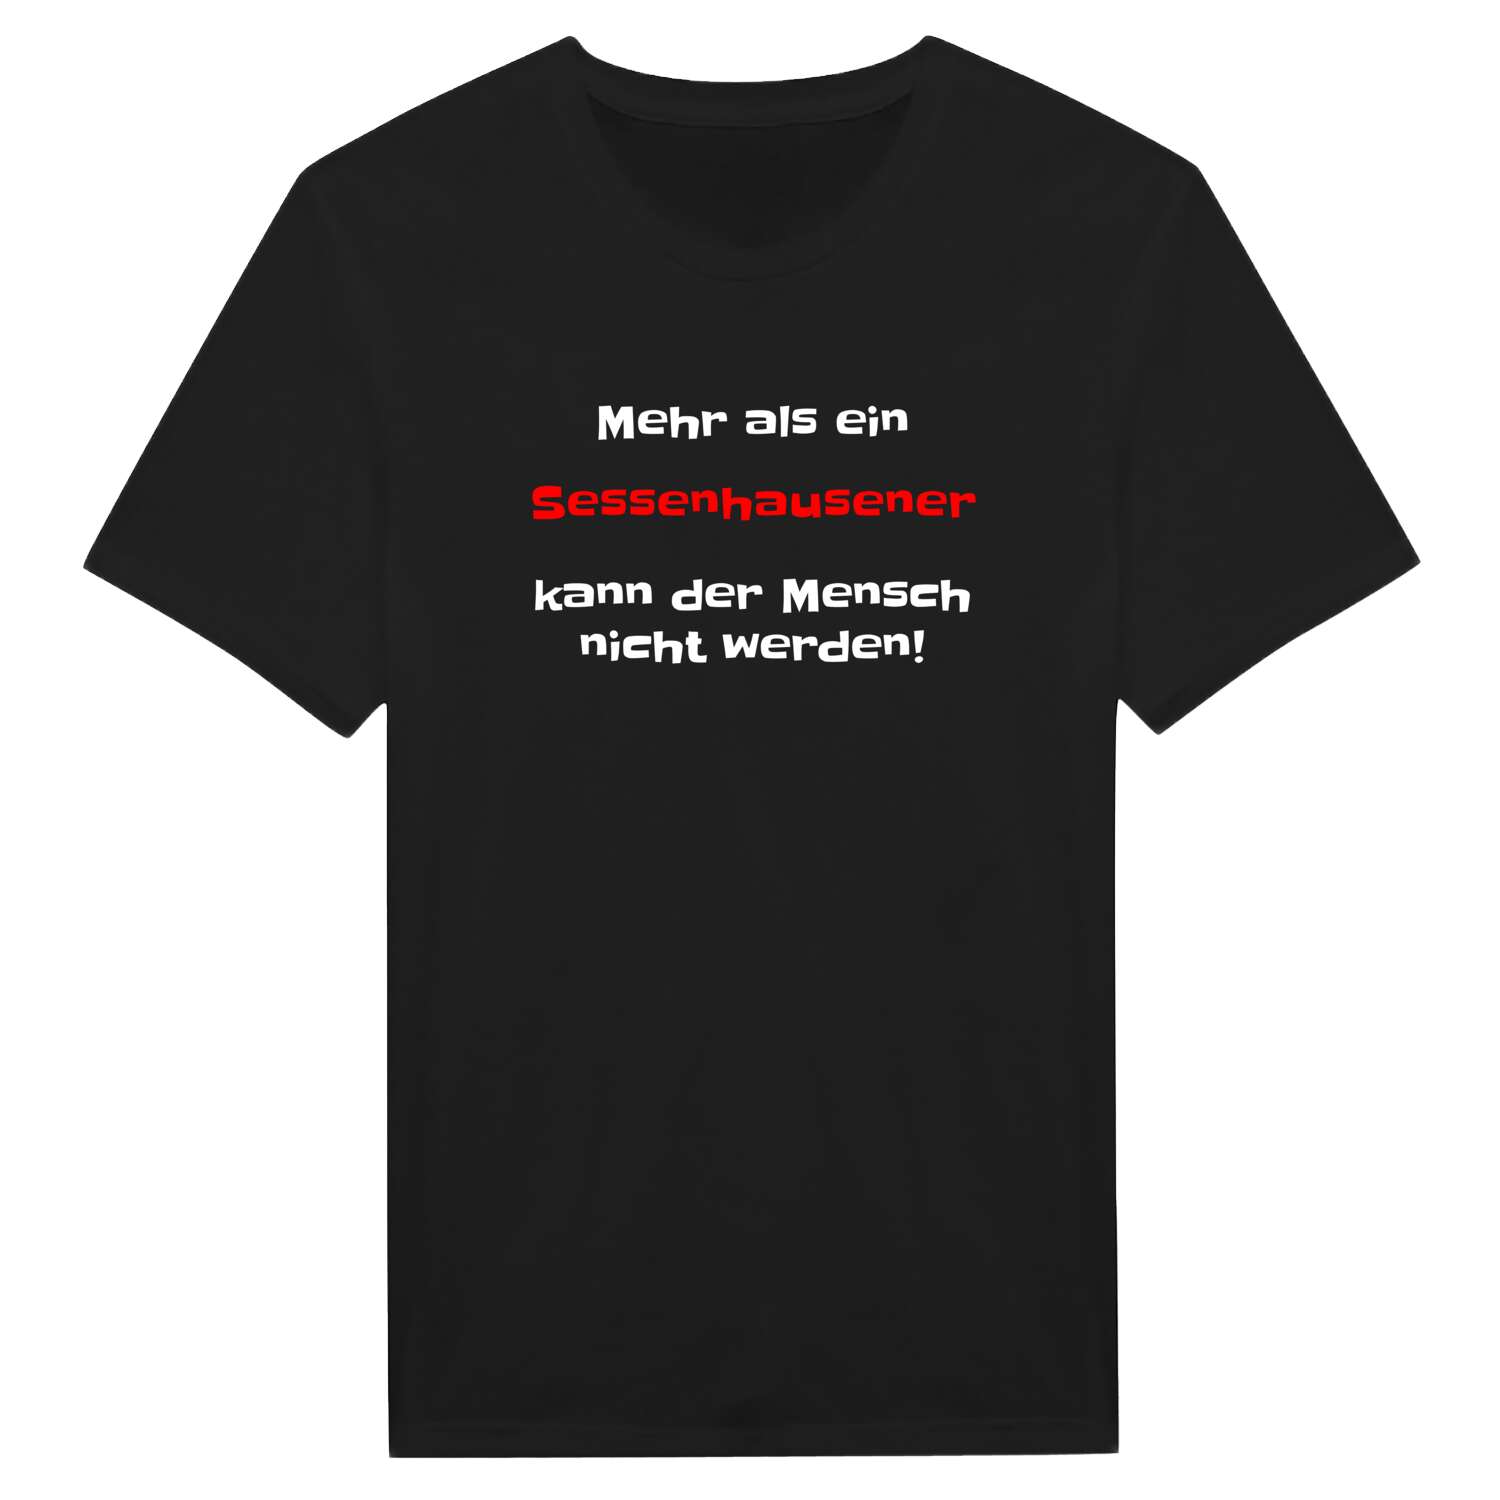 Sessenhausen T-Shirt »Mehr als ein«